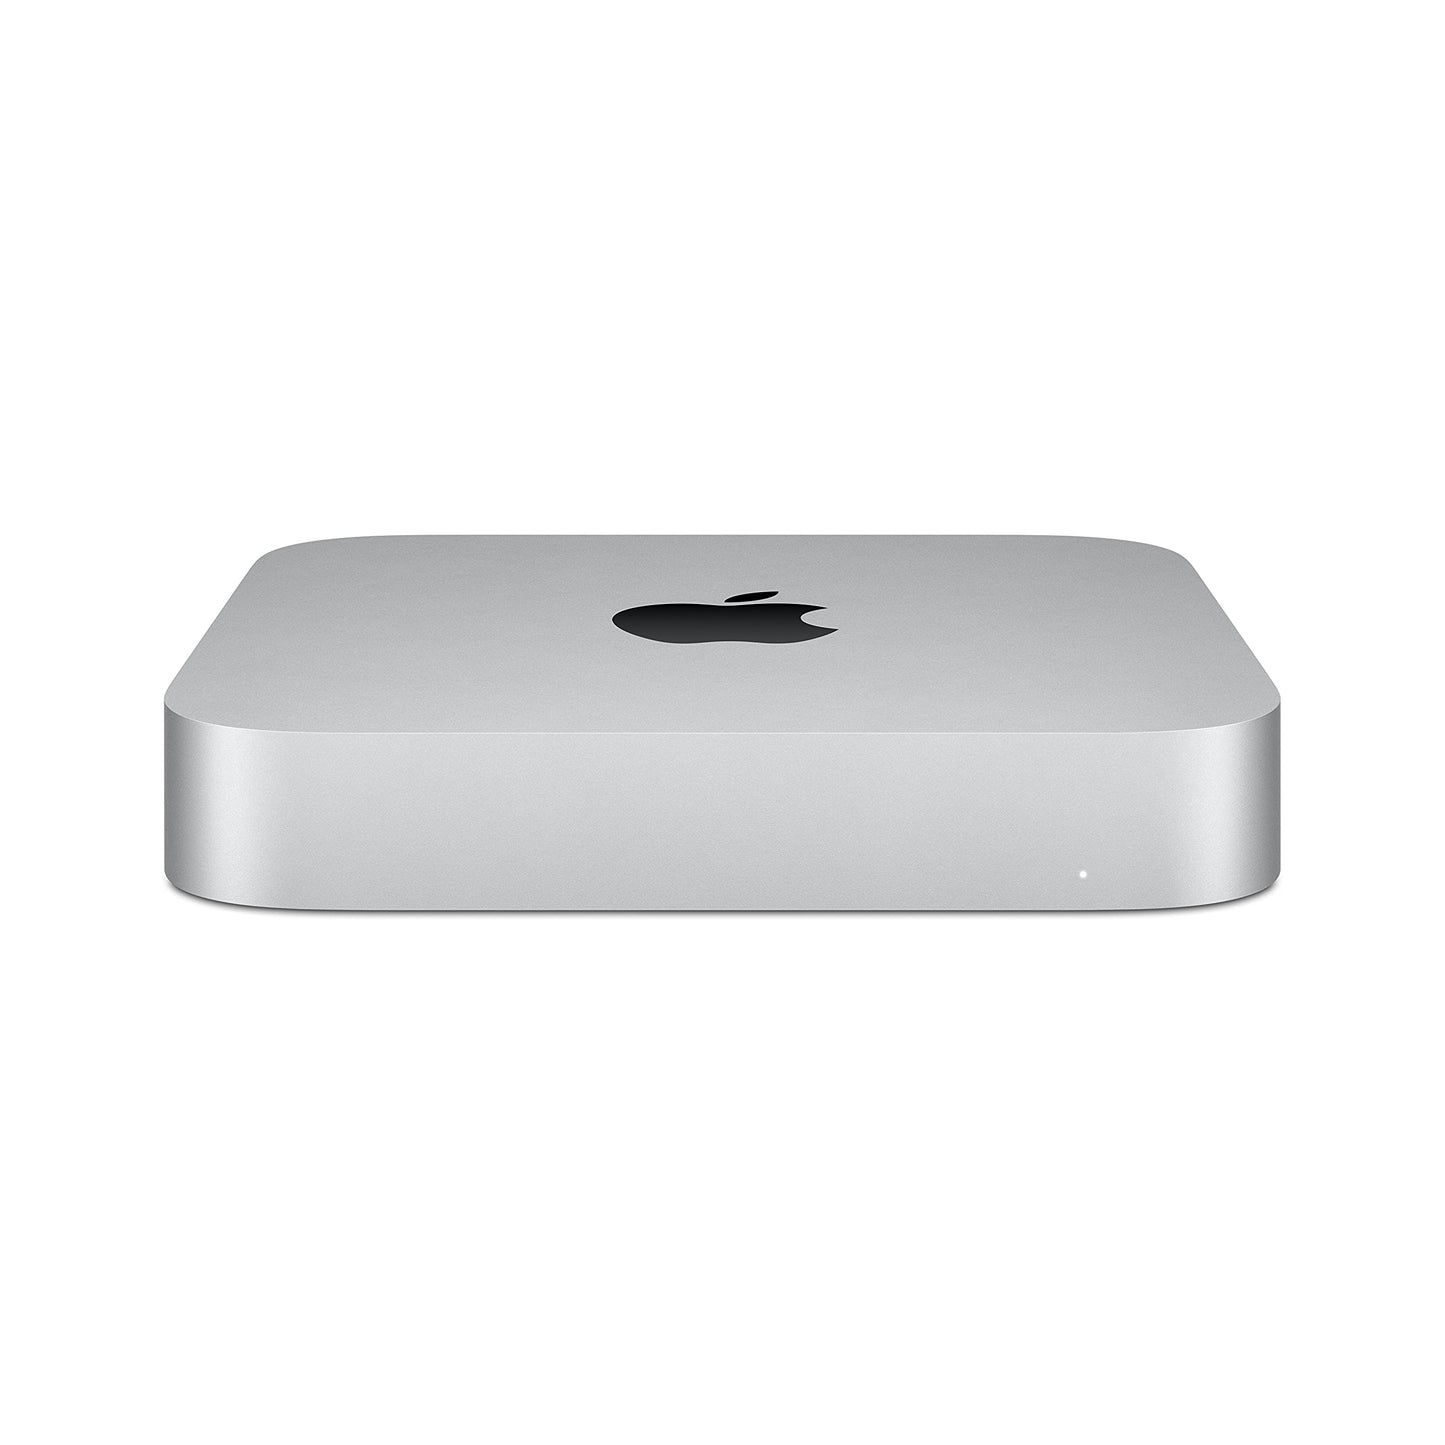 Mac mini: Apple M1 chip with 8‑core CPU and 8‑core GPU, 512GB SSD